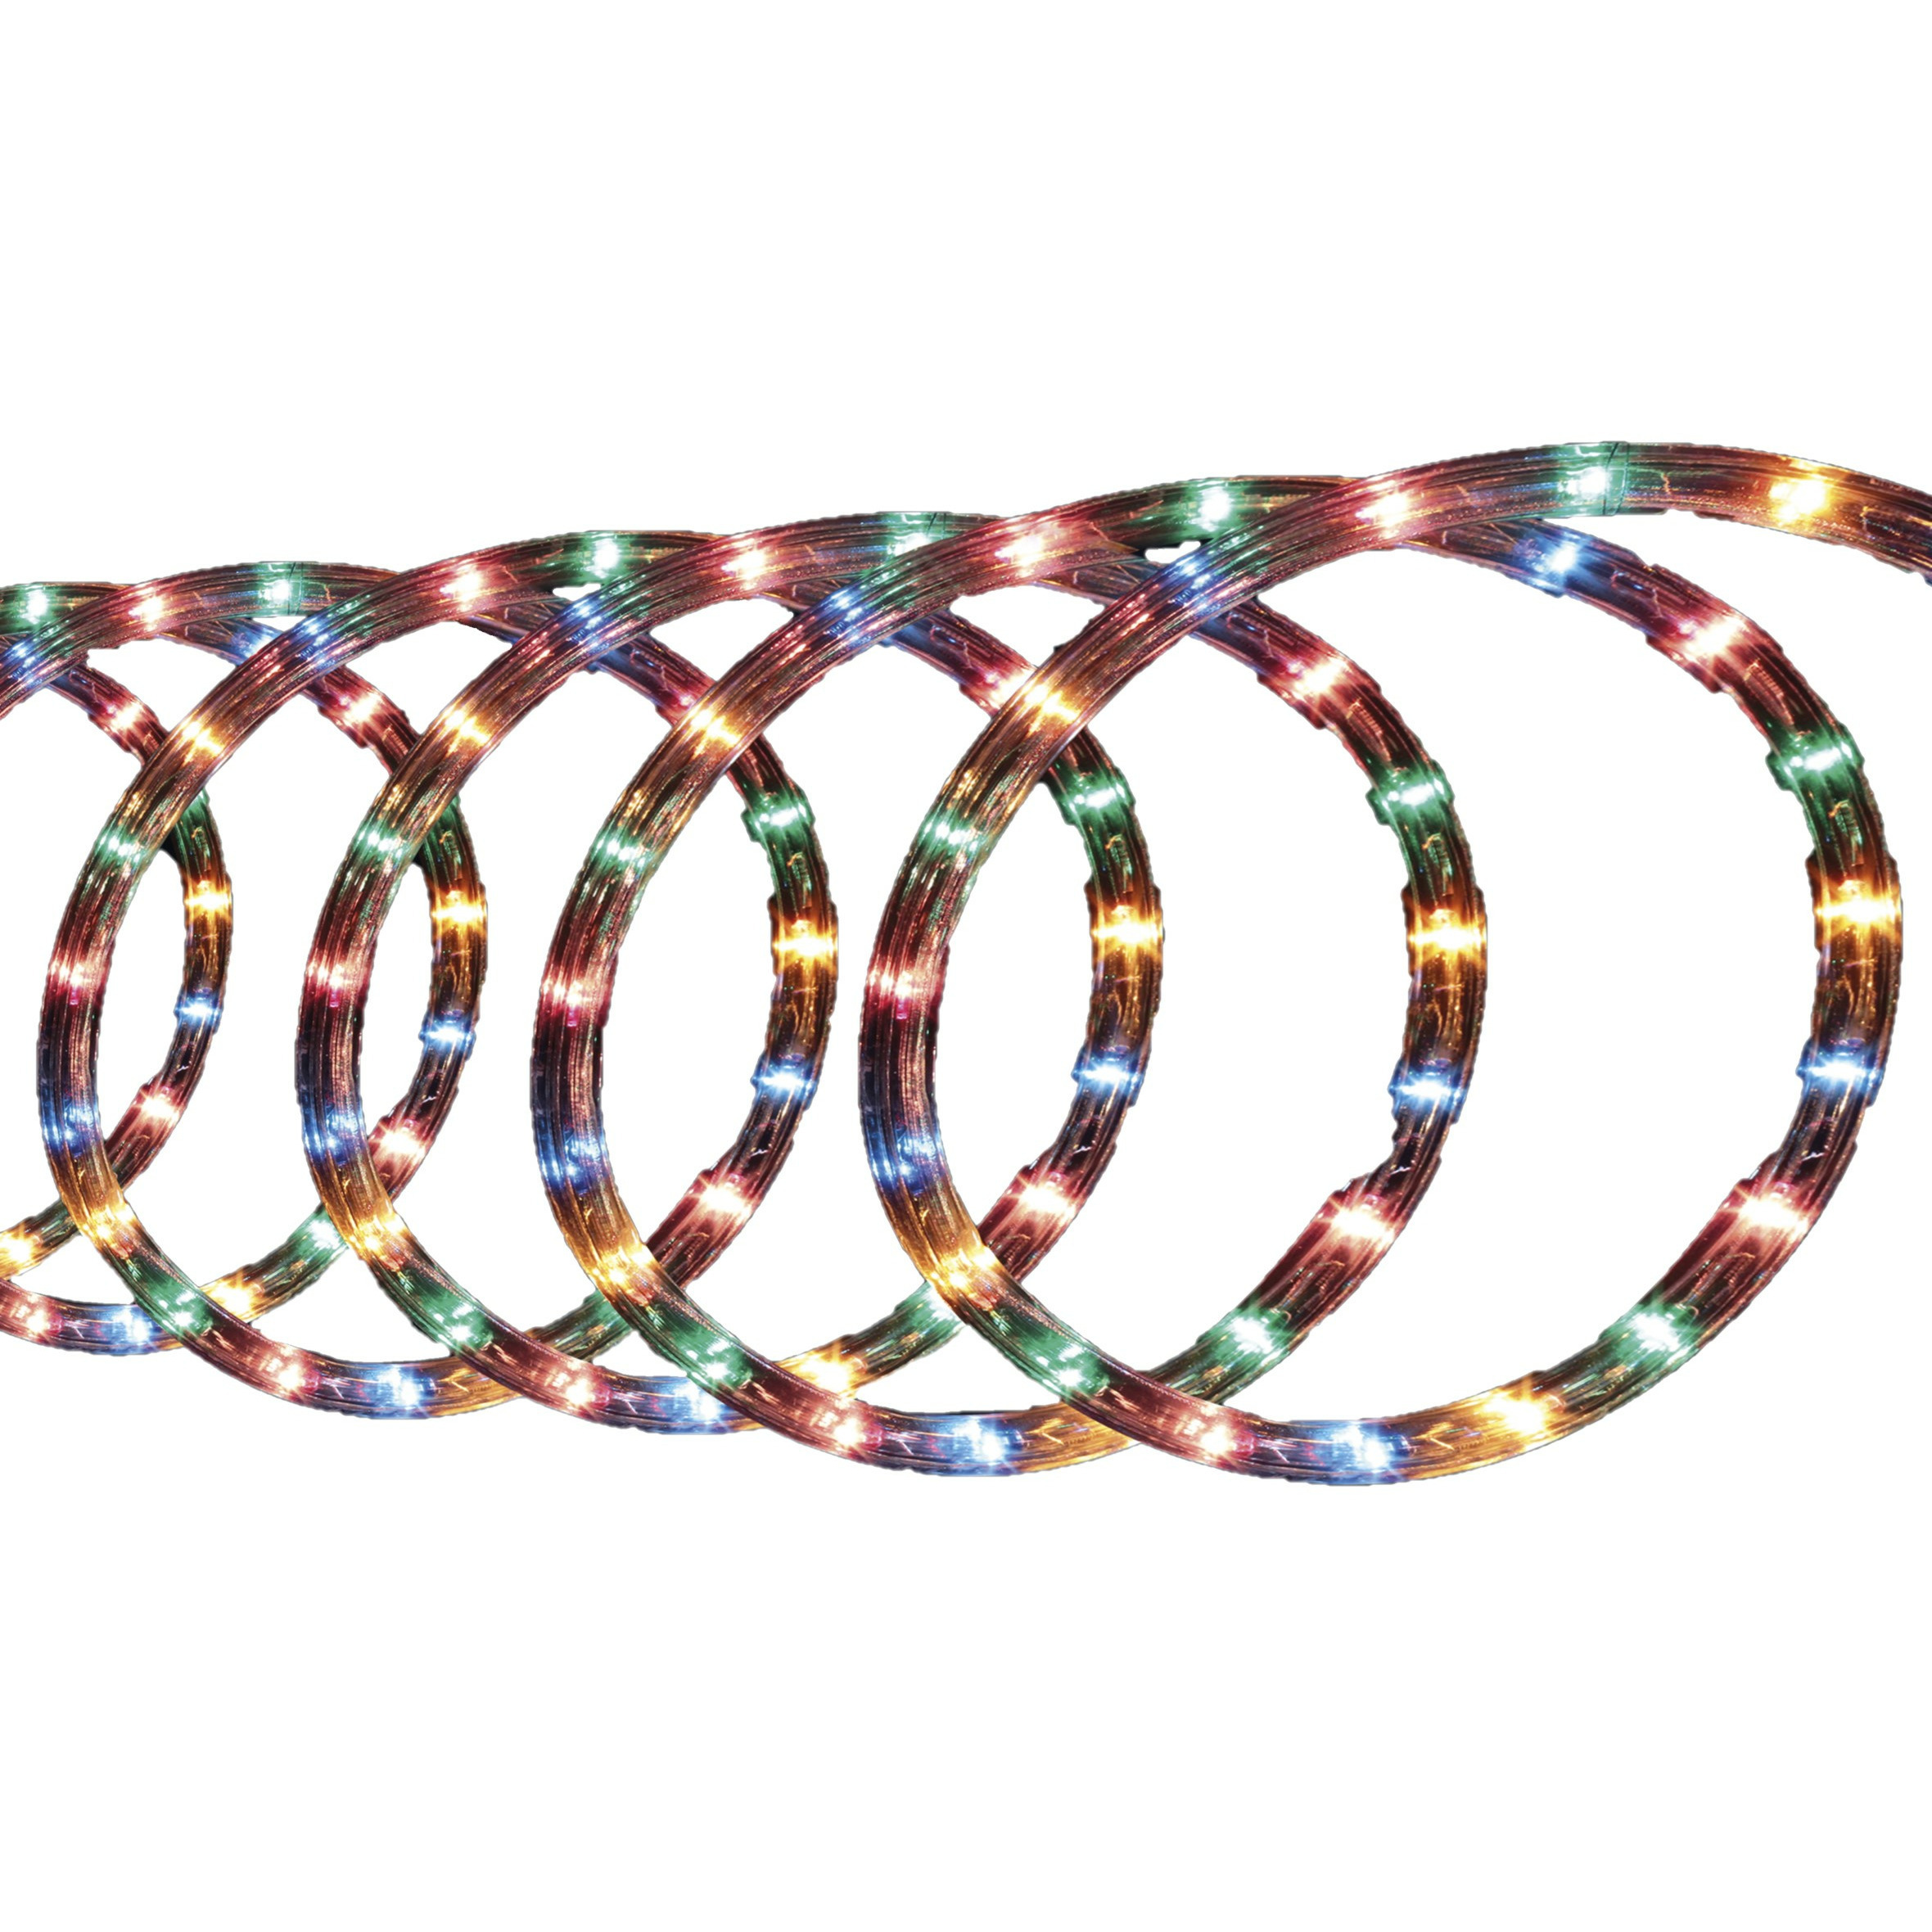 Lichtslang-slangverlichting 6 meter met 108 lampjes gekleurd